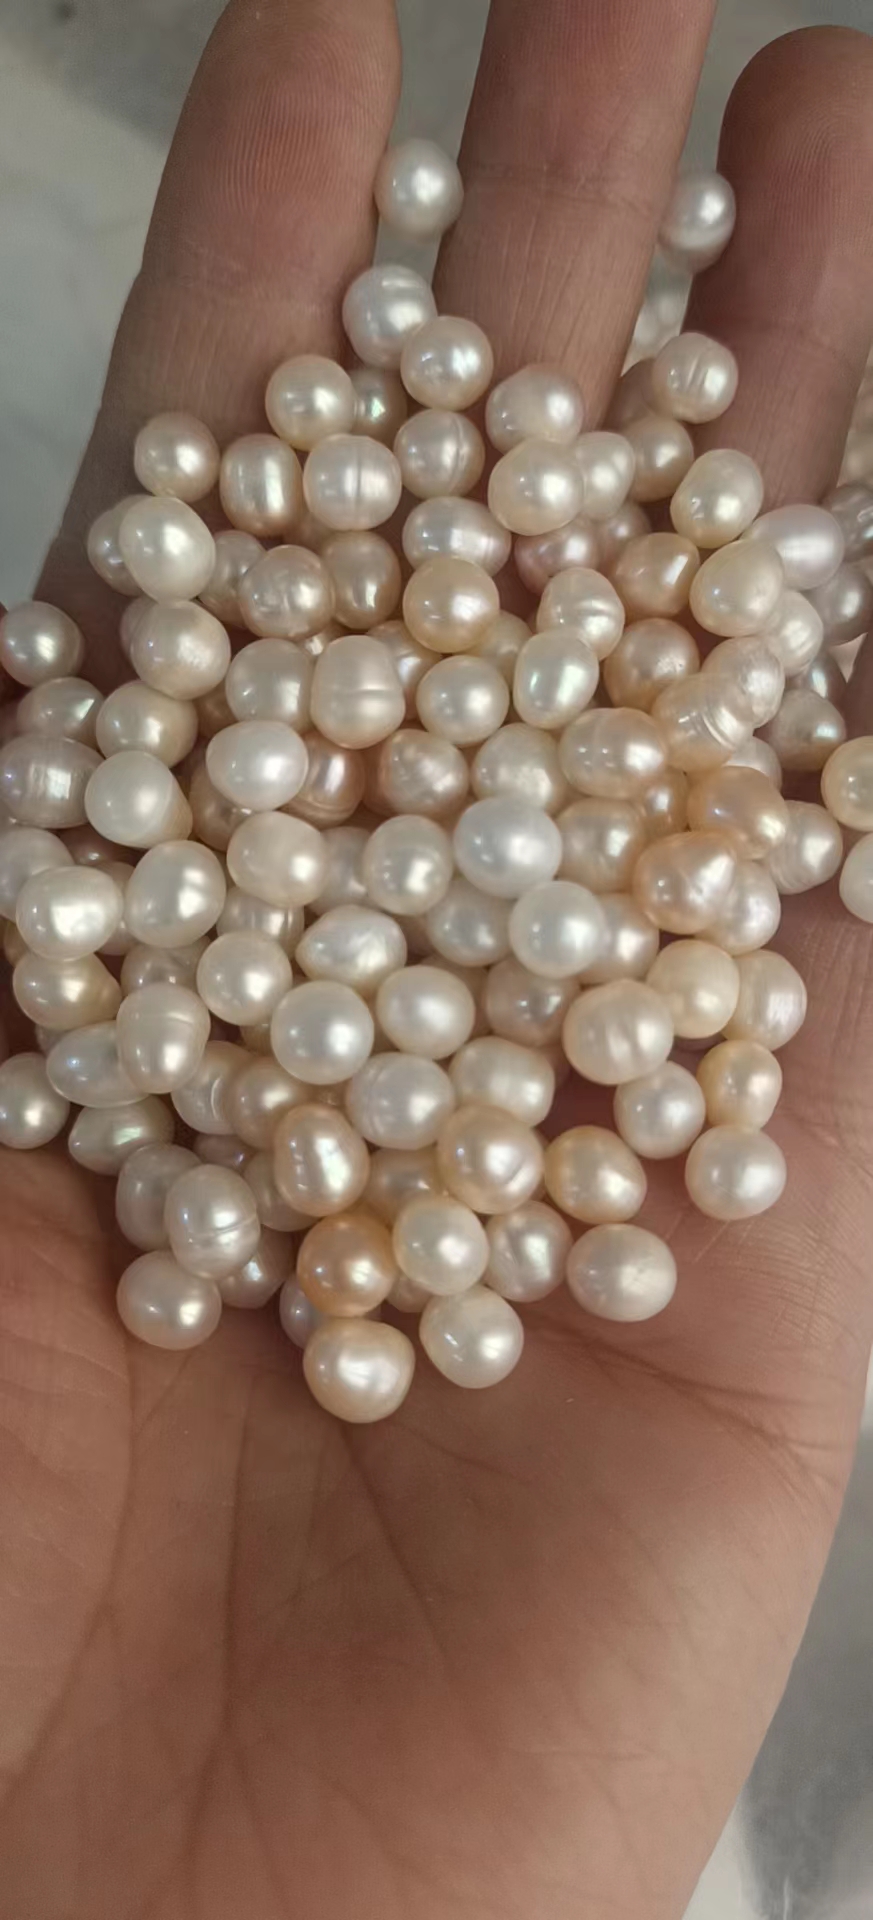 安国市珍珠  正品多年生 大小规格齐全 保质保量 一斤起包邮